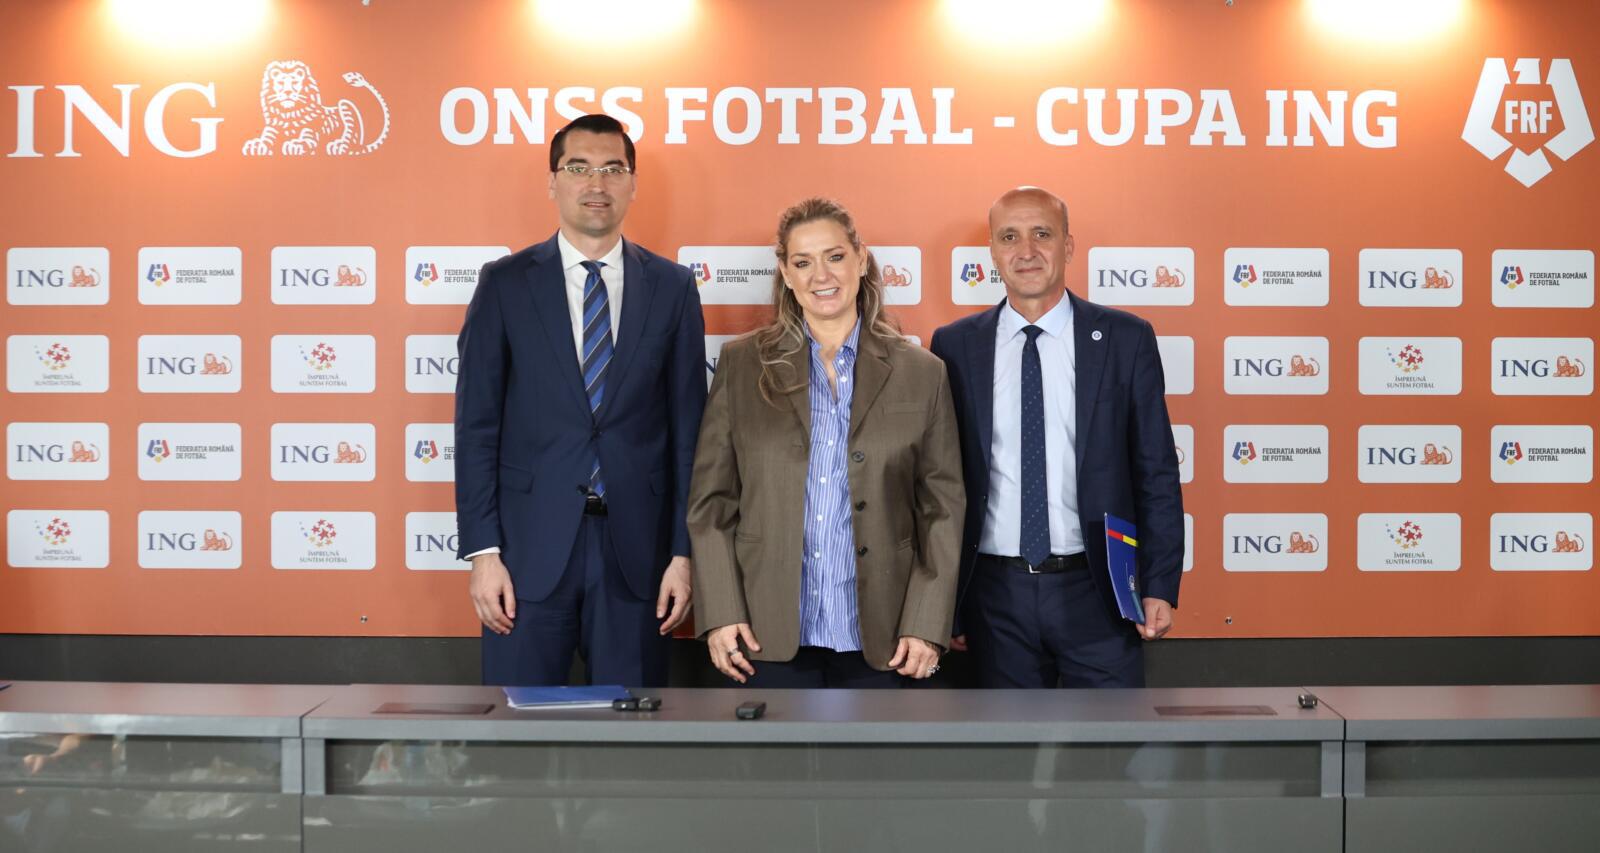 Parteneriat surpriză: ING Bank s-a asociat cu Federaţia Română de Fotbal pentru a susţine elevii din învăţământul preuniversitar în participarea la campionate şi competiţii sportive de fotbal